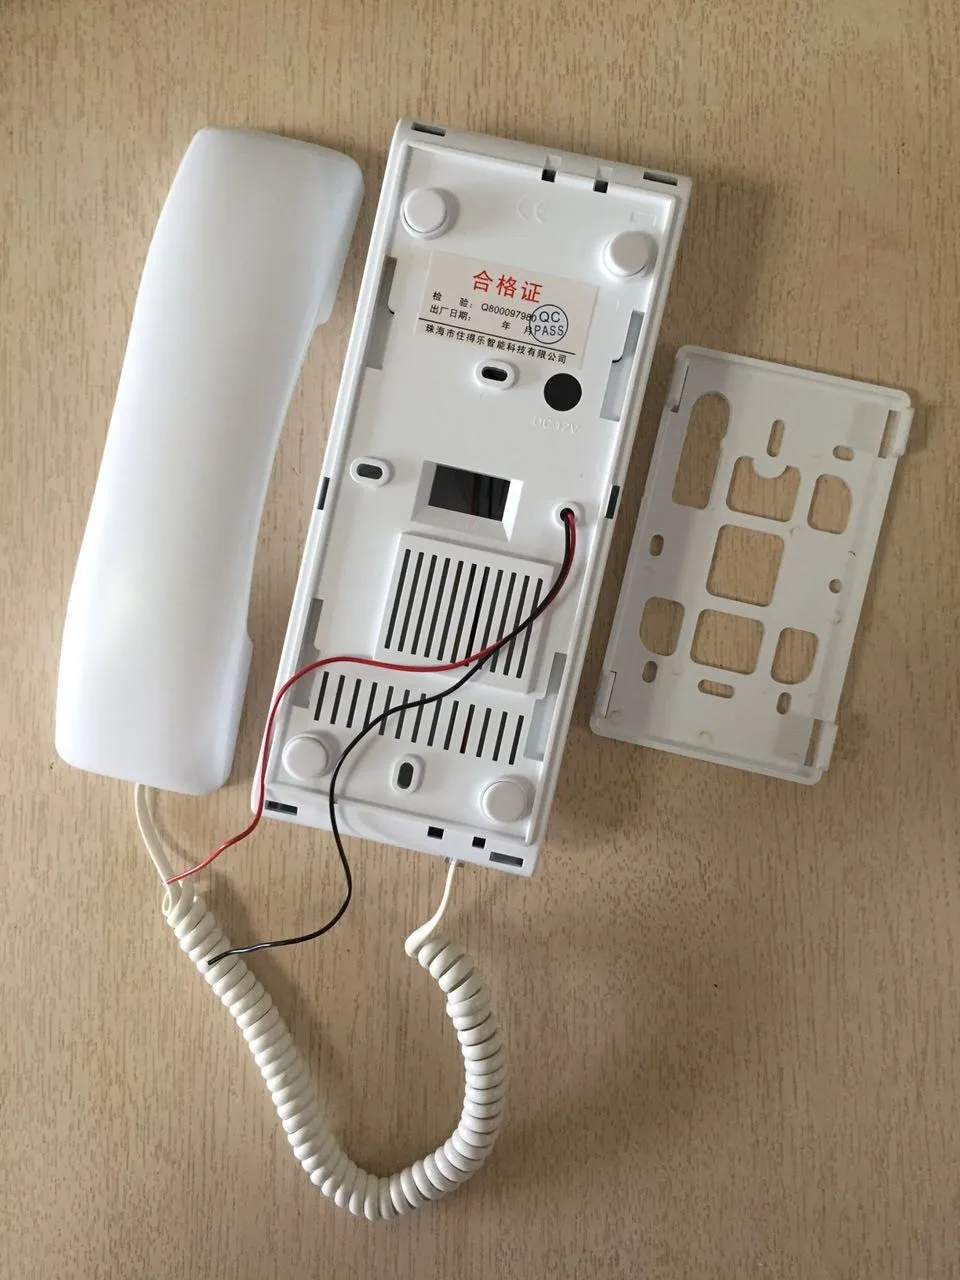 ZHUDELE роскошный домофон для 8-домофон для квартиры система домашней безопасности аудио дверной телефон водонепроницаемый utdoor станция